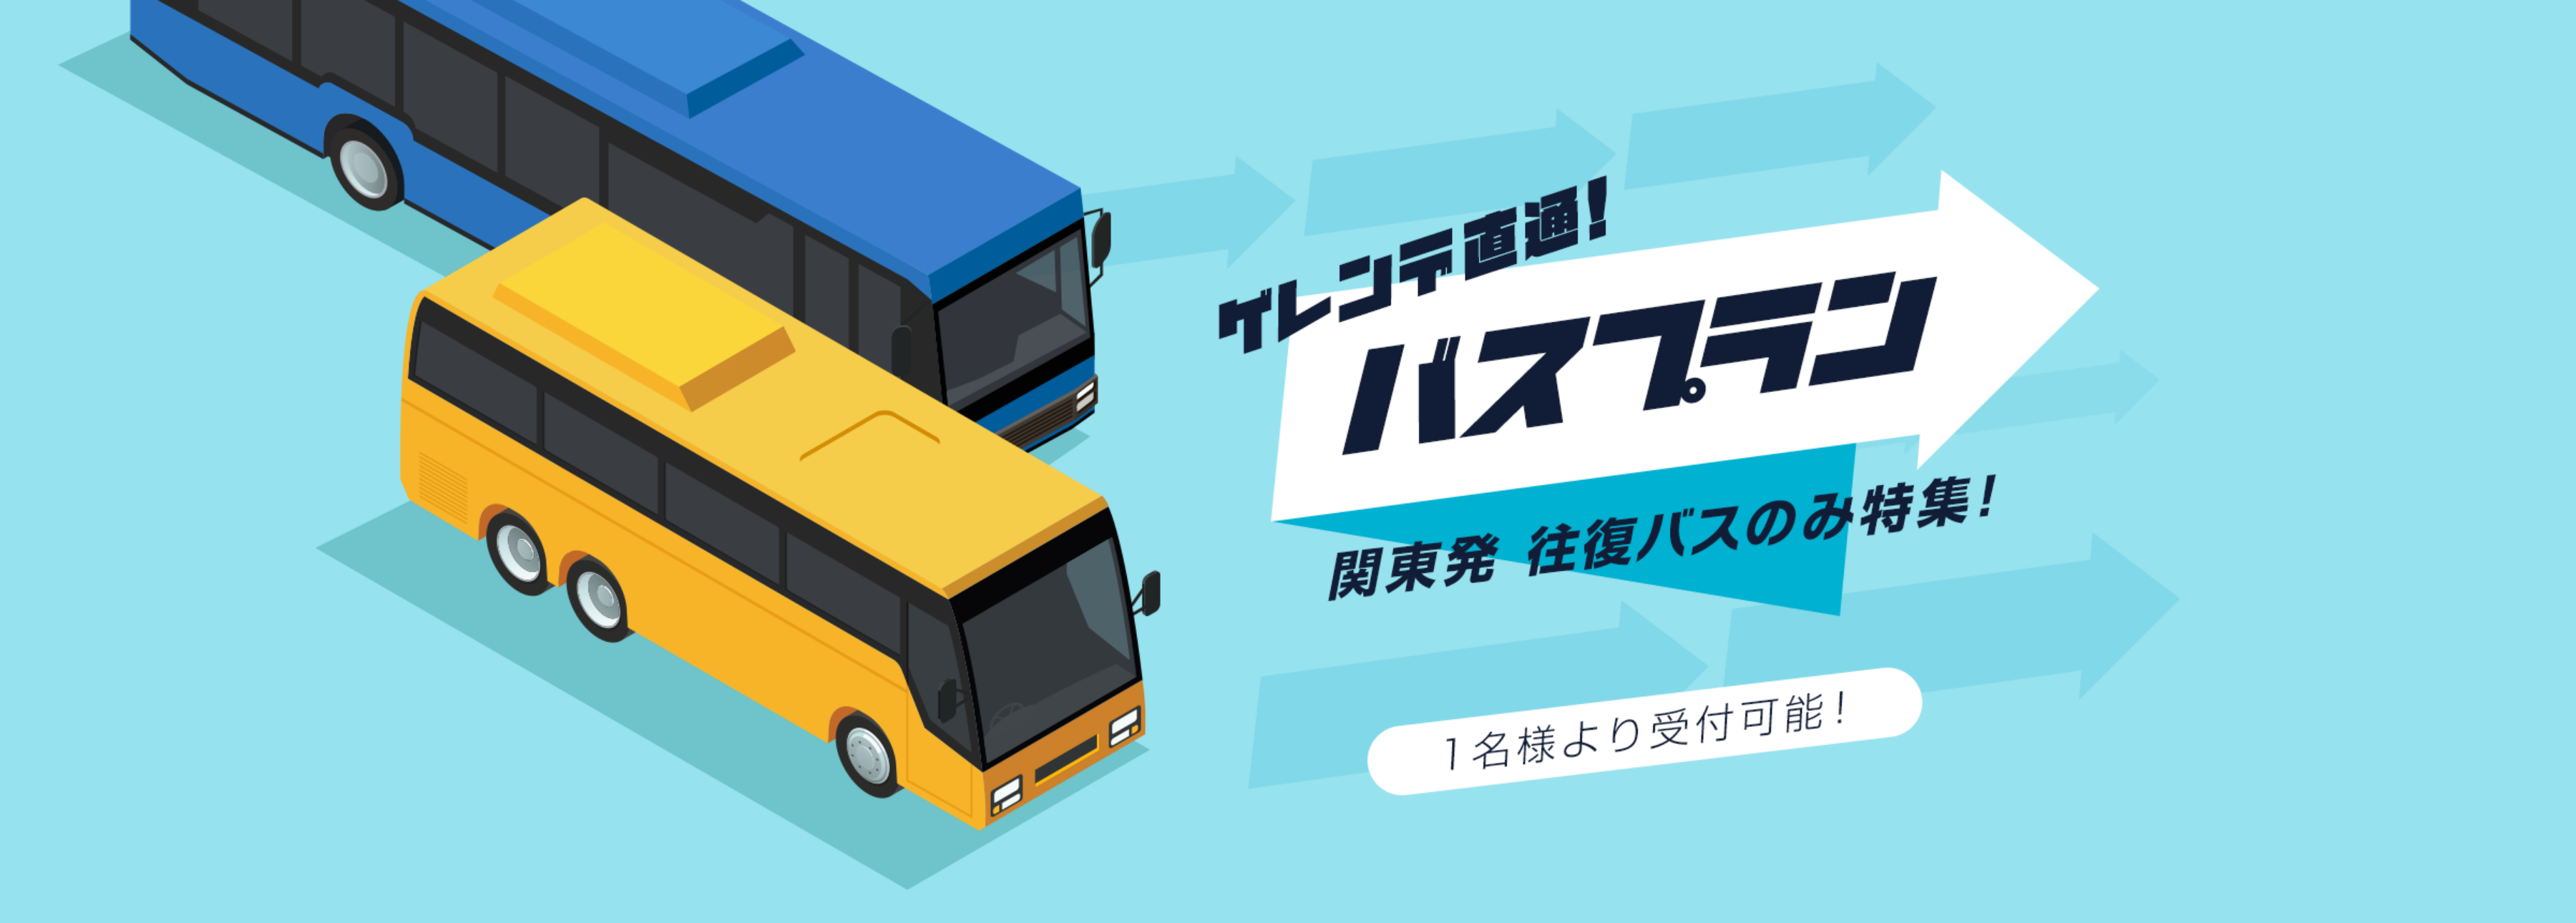 ゲレンデ直通バスプラン 関東発 往復バスのみ特集